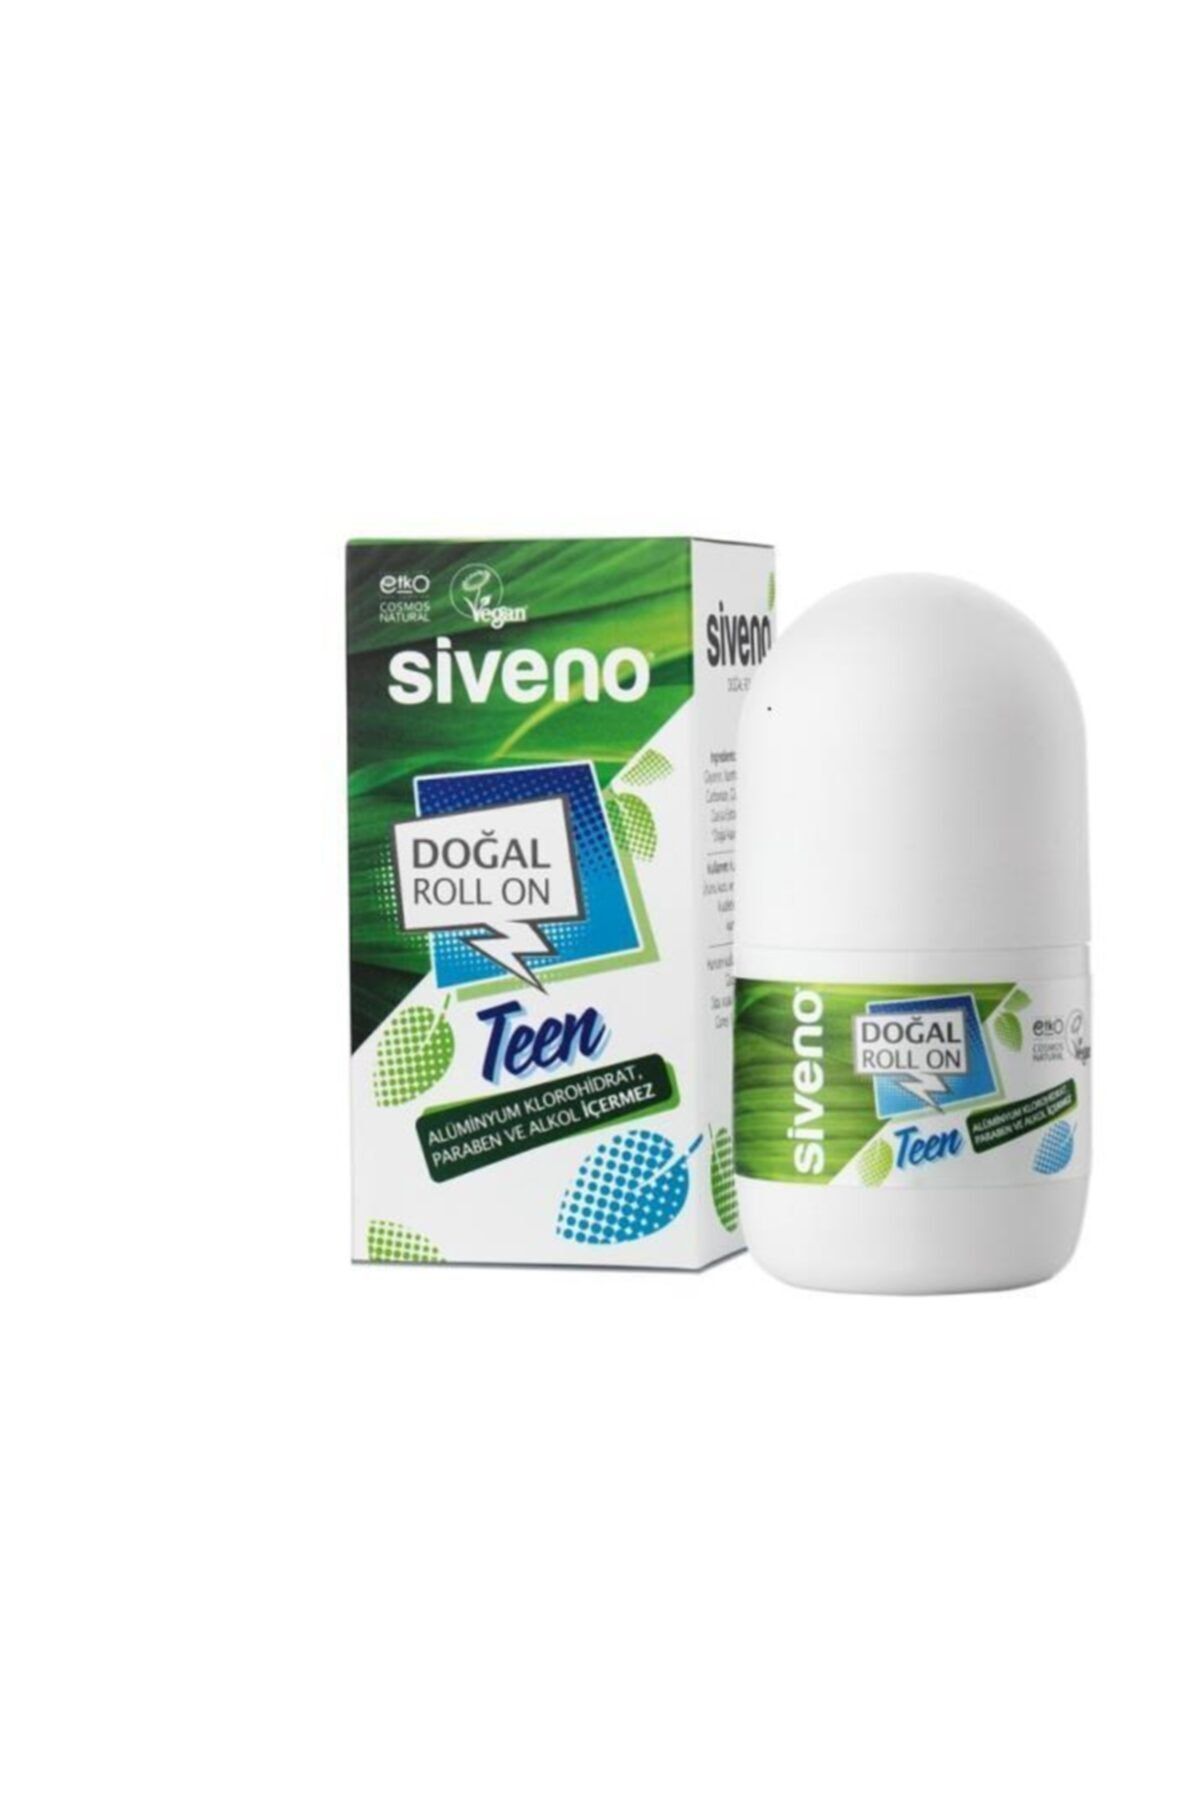 Siveno %100 Doğal Roll-On Teen Blue Genç Erkek Deodorant Ter Kokusu Önleyici Bitkisel Lekesiz Vegan 50 ml